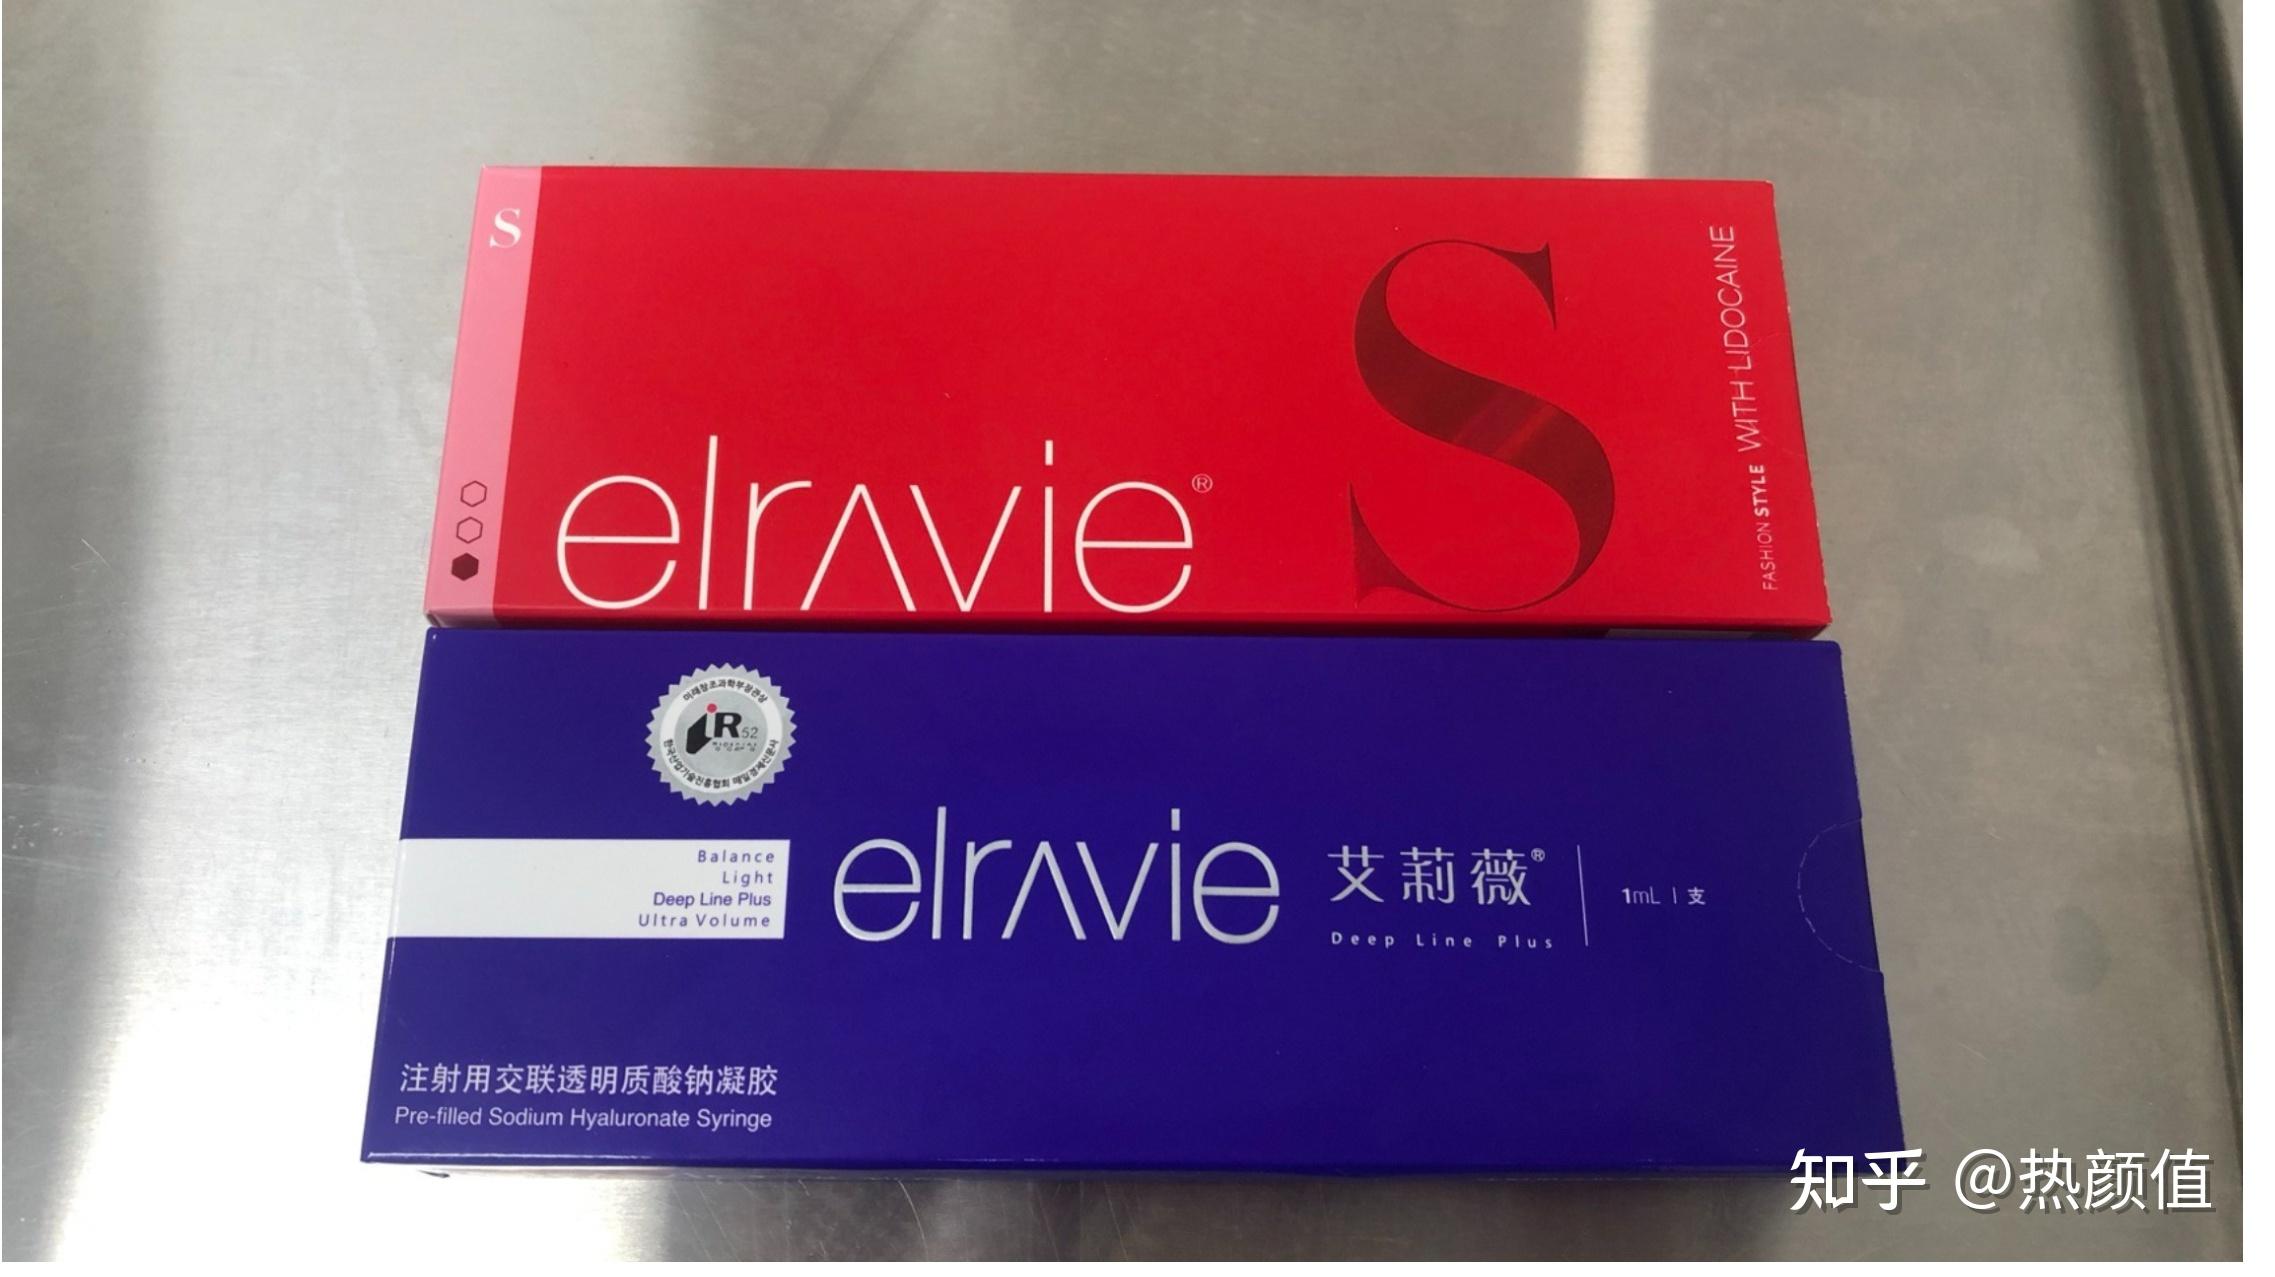 艾莉薇多重玻尿酸保湿舒缓面膜_艾莉薇品牌_中国化妆品招商网